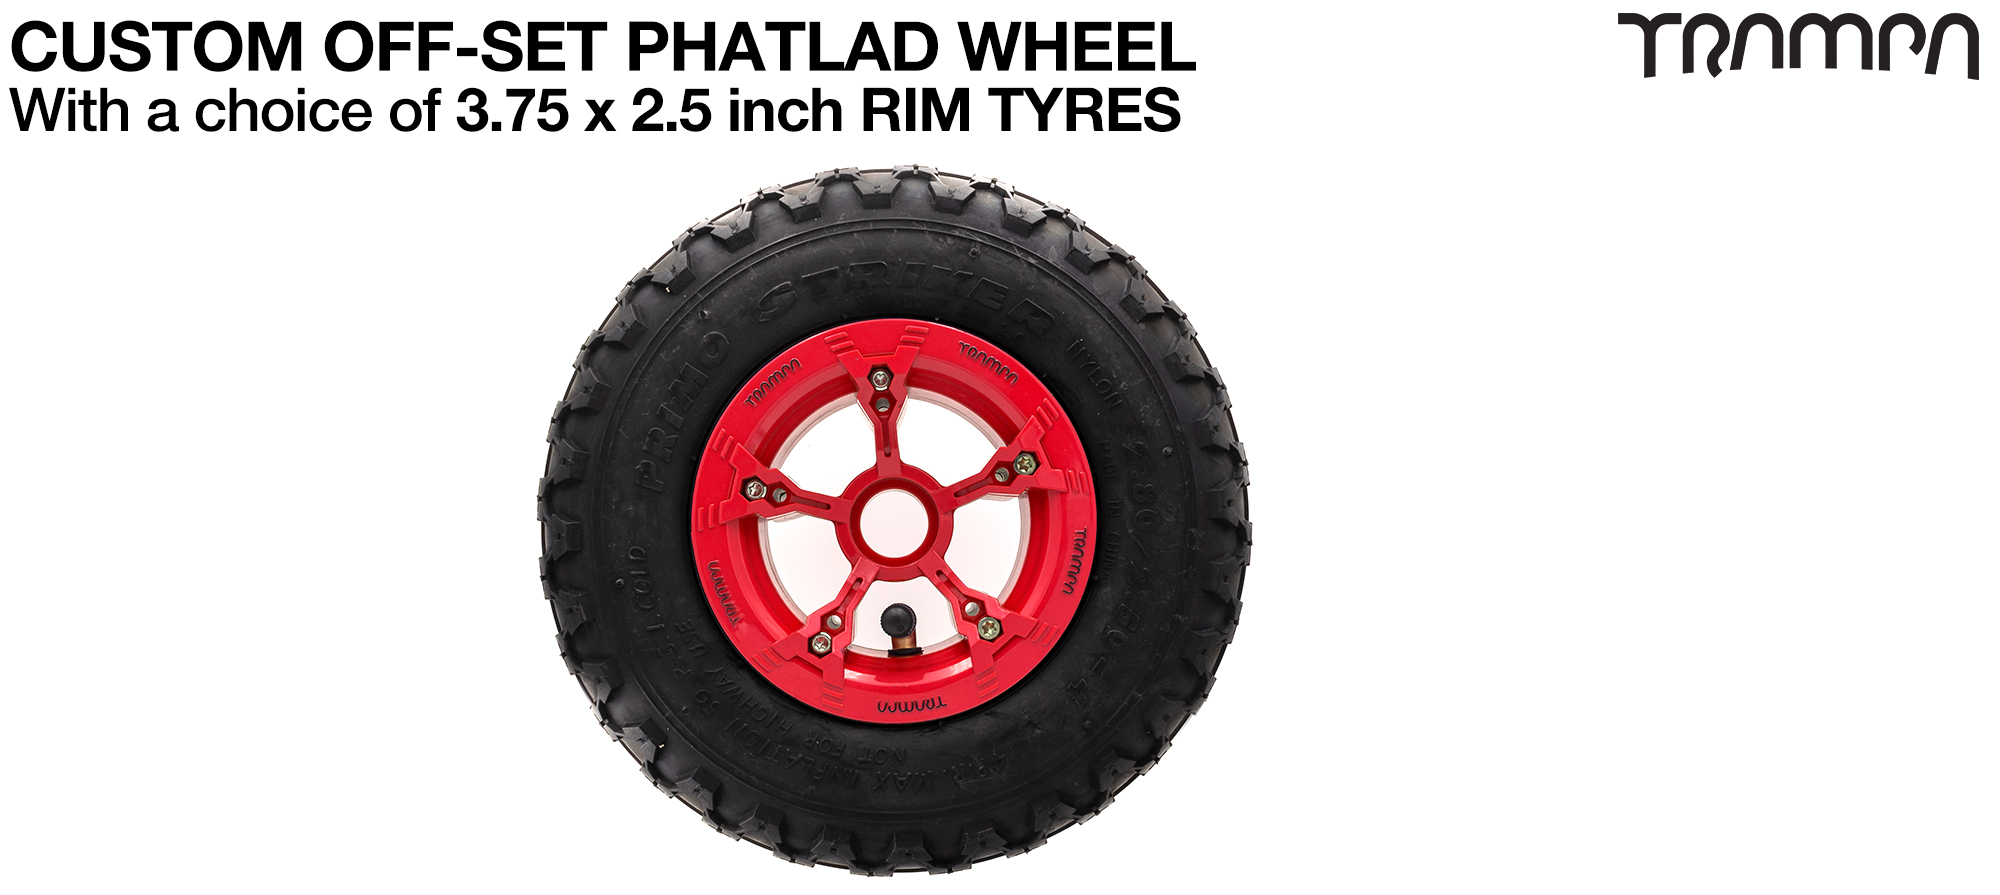 TRAMPA PHATLADS 5 spoke Wheels - 9 Inch PROMO STRIKER Tyres 